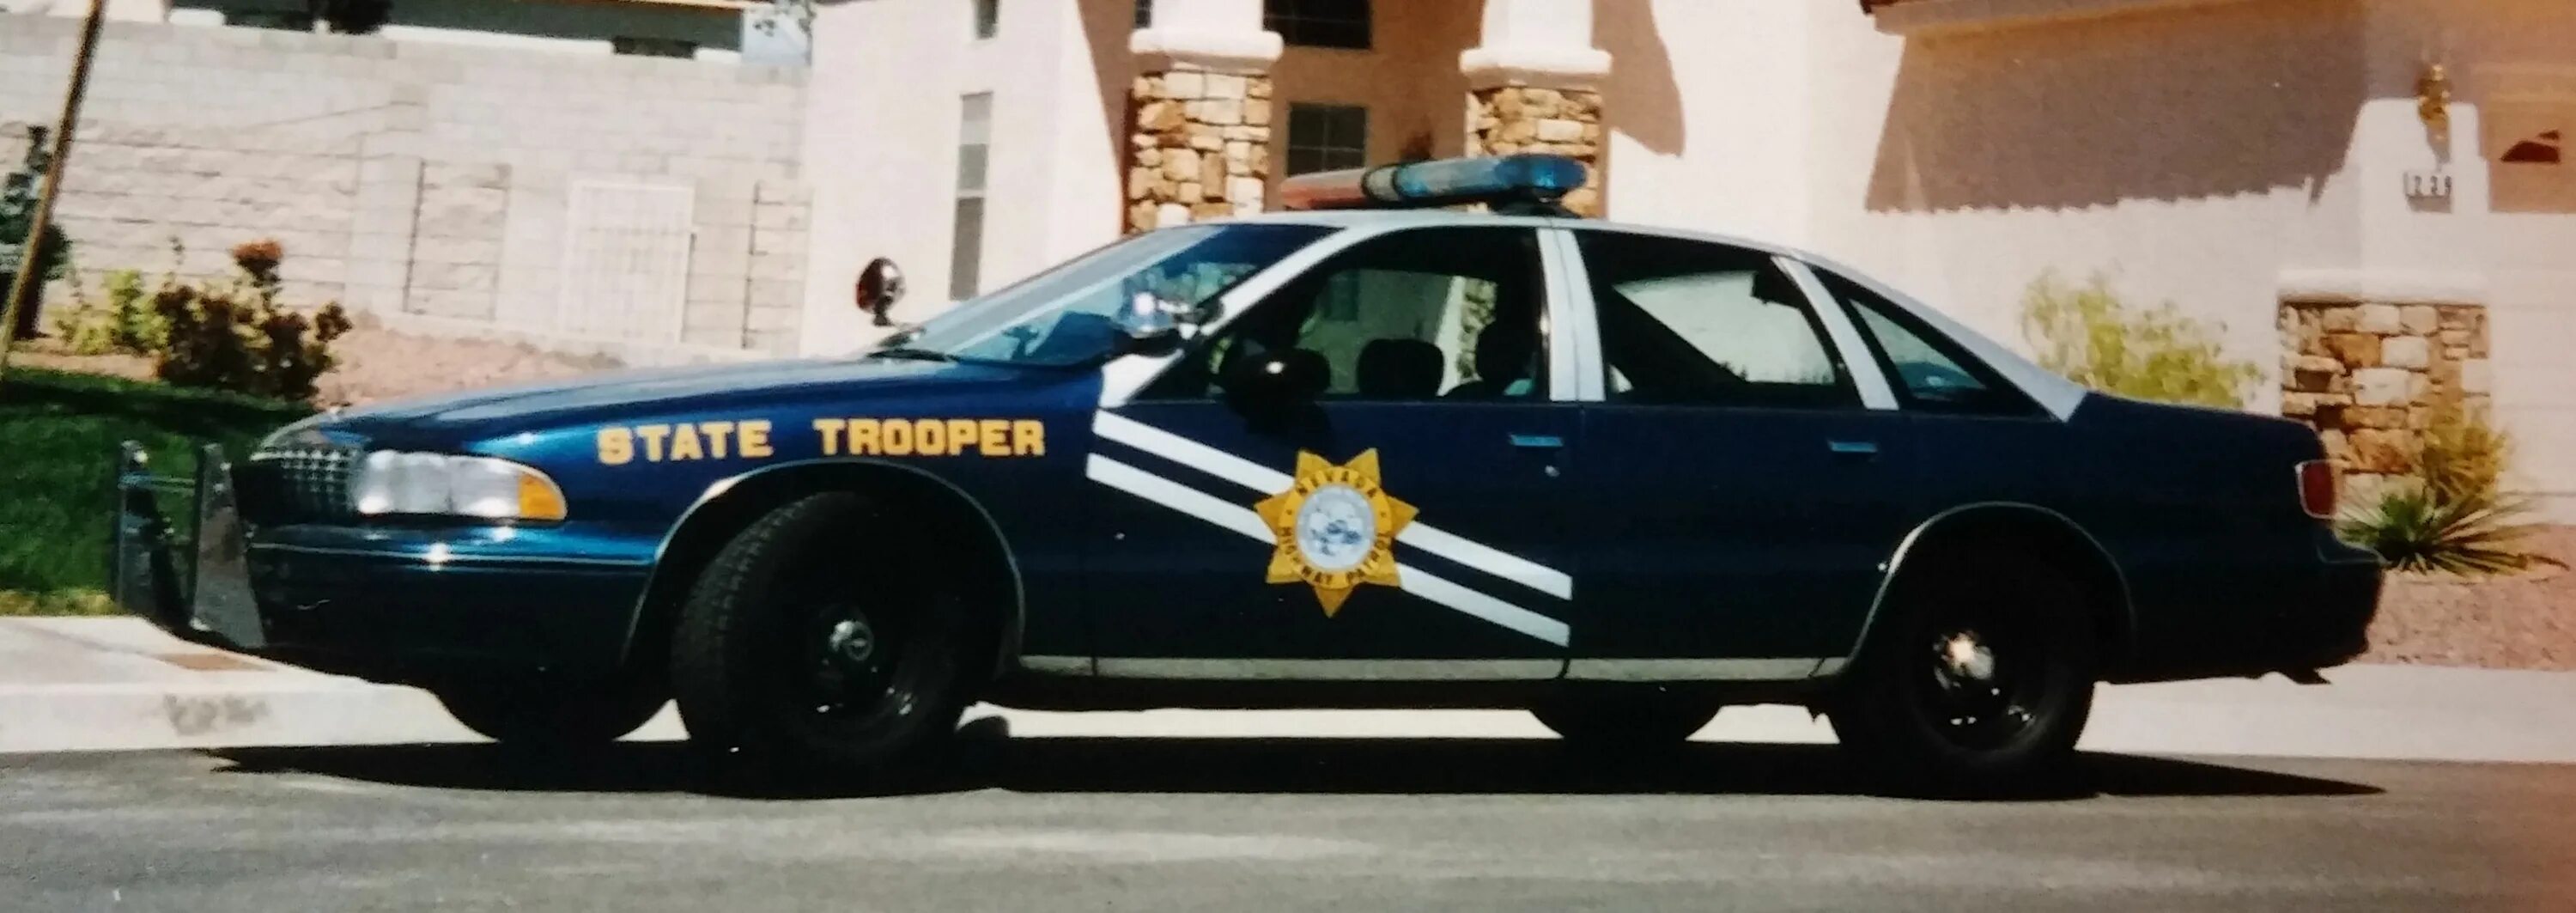 Chevrolet Caprice 9c1. Chevrolet Caprice 1994 Police. 1991 Chevrolet Caprice 9c1 Police. Chevrolet Caprice 1992 Police.